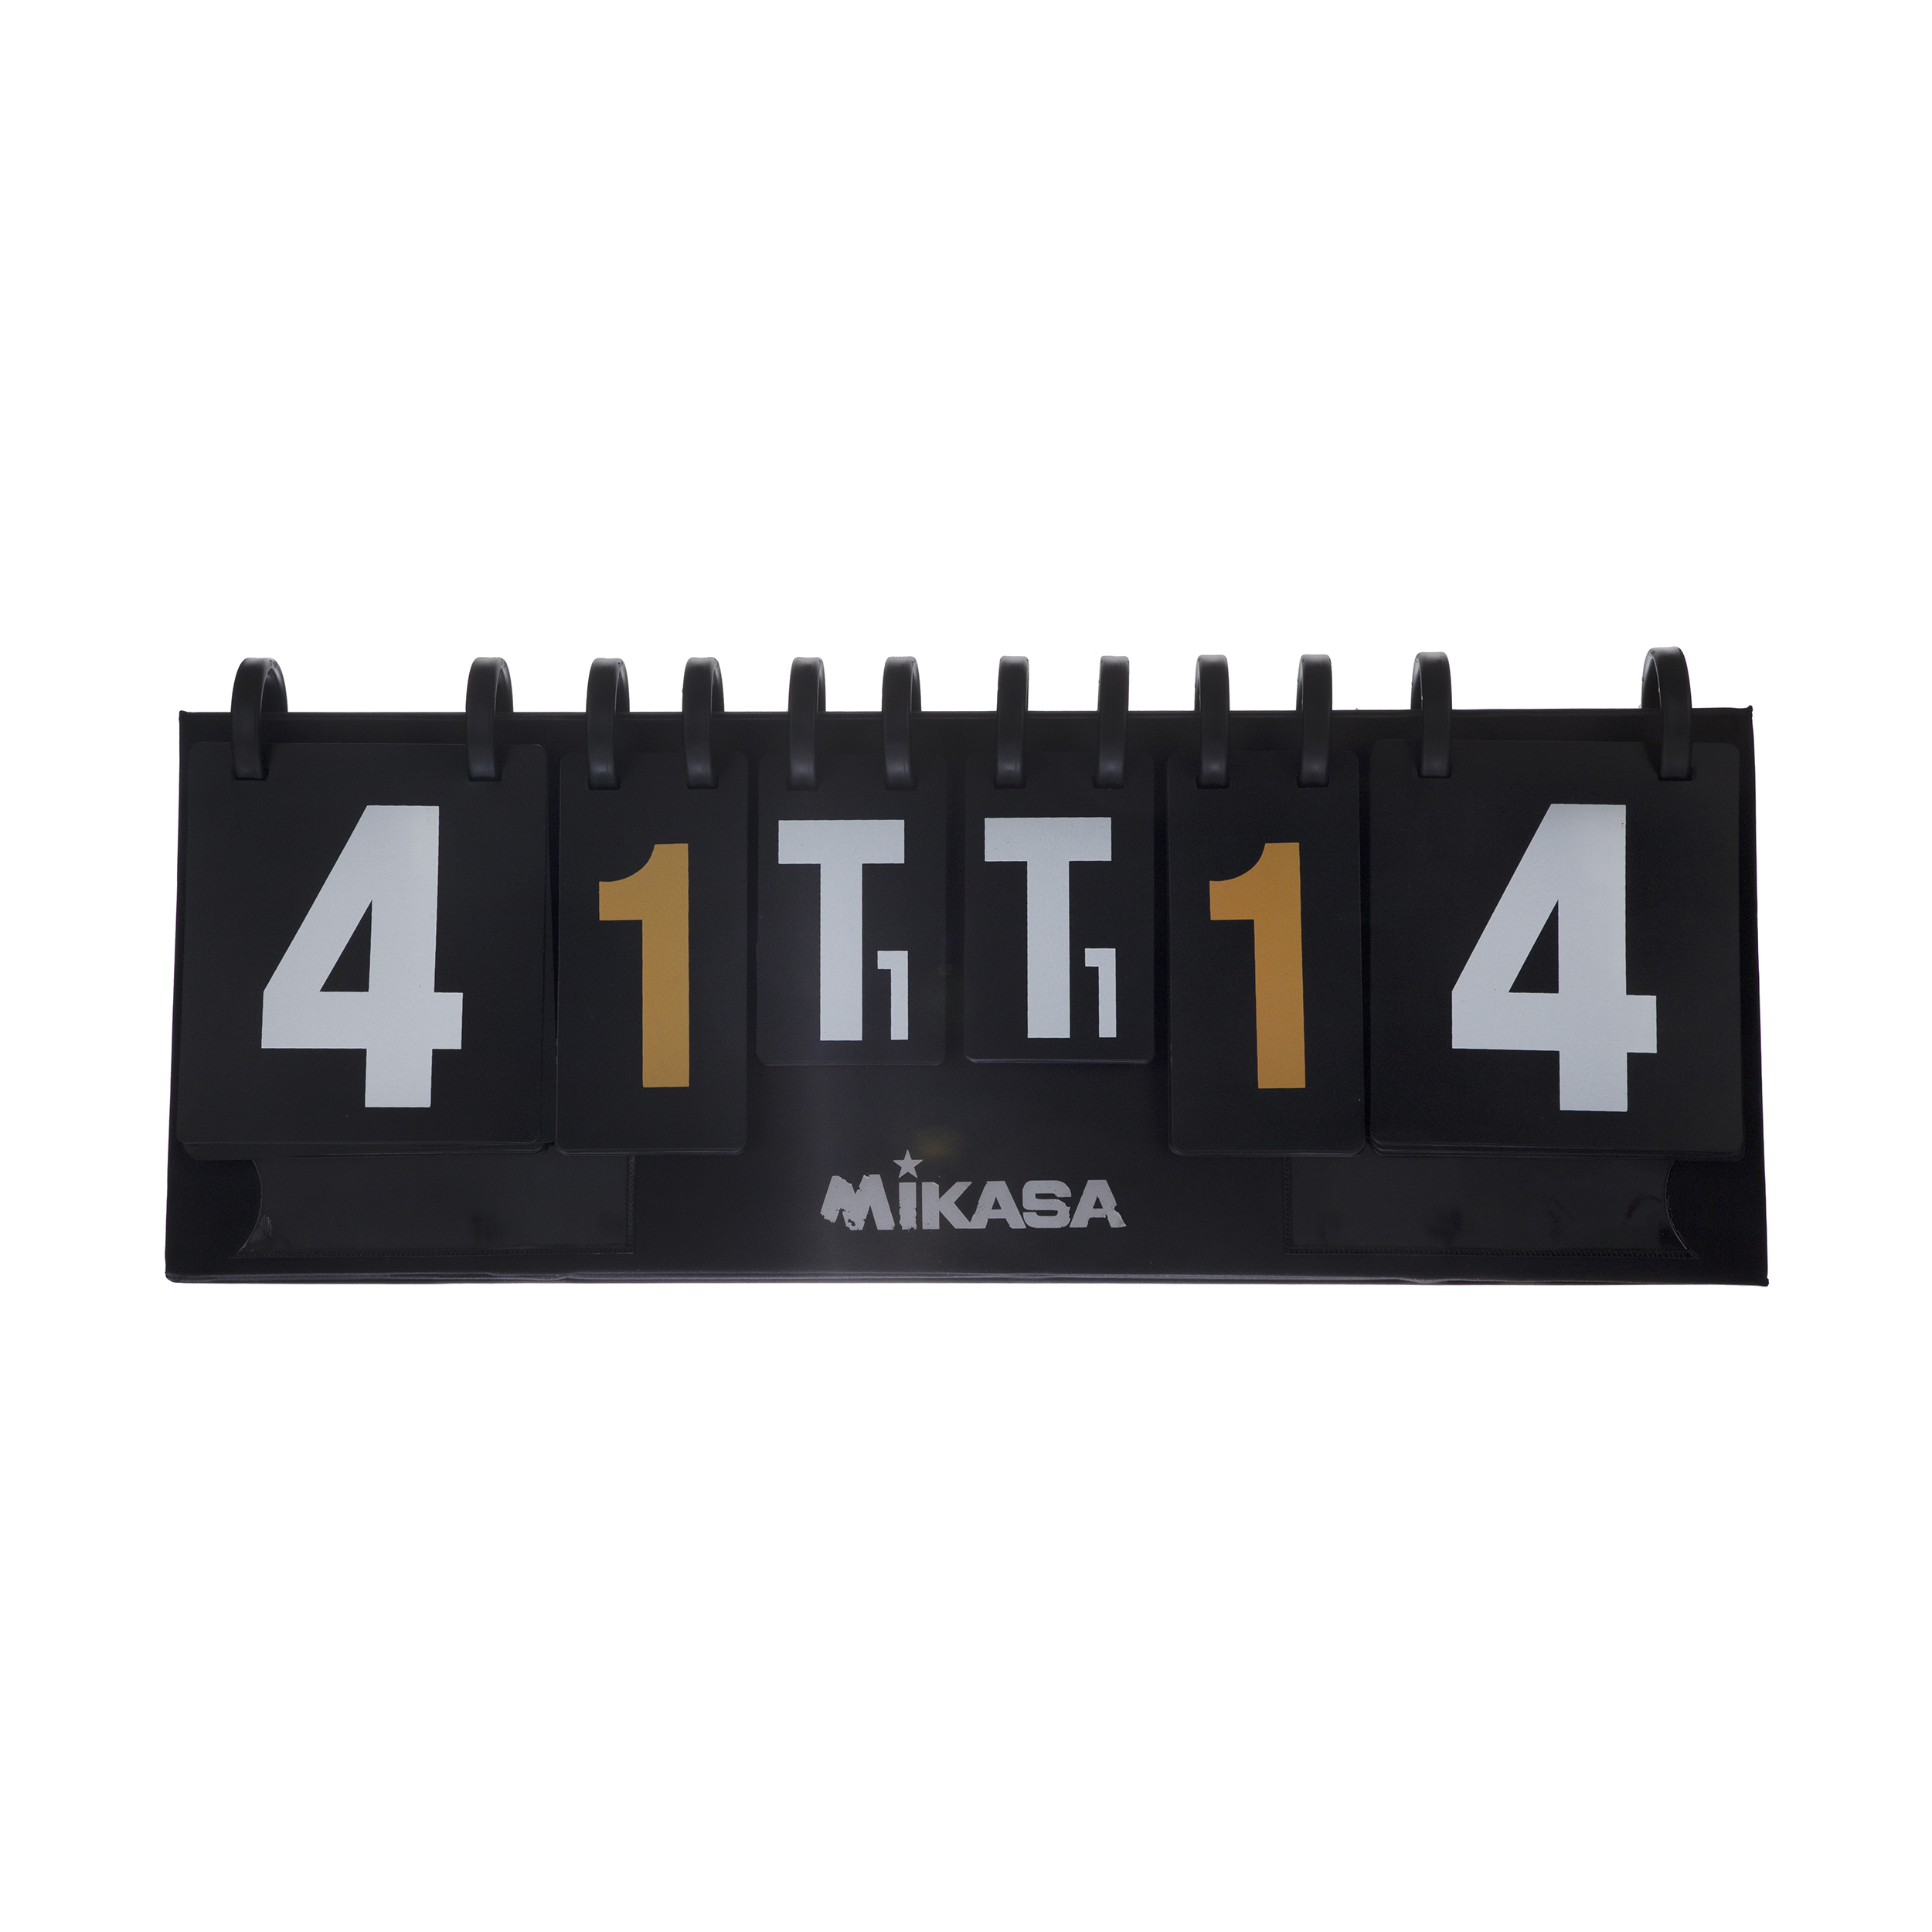 شماره انداز میکاسا کد T013